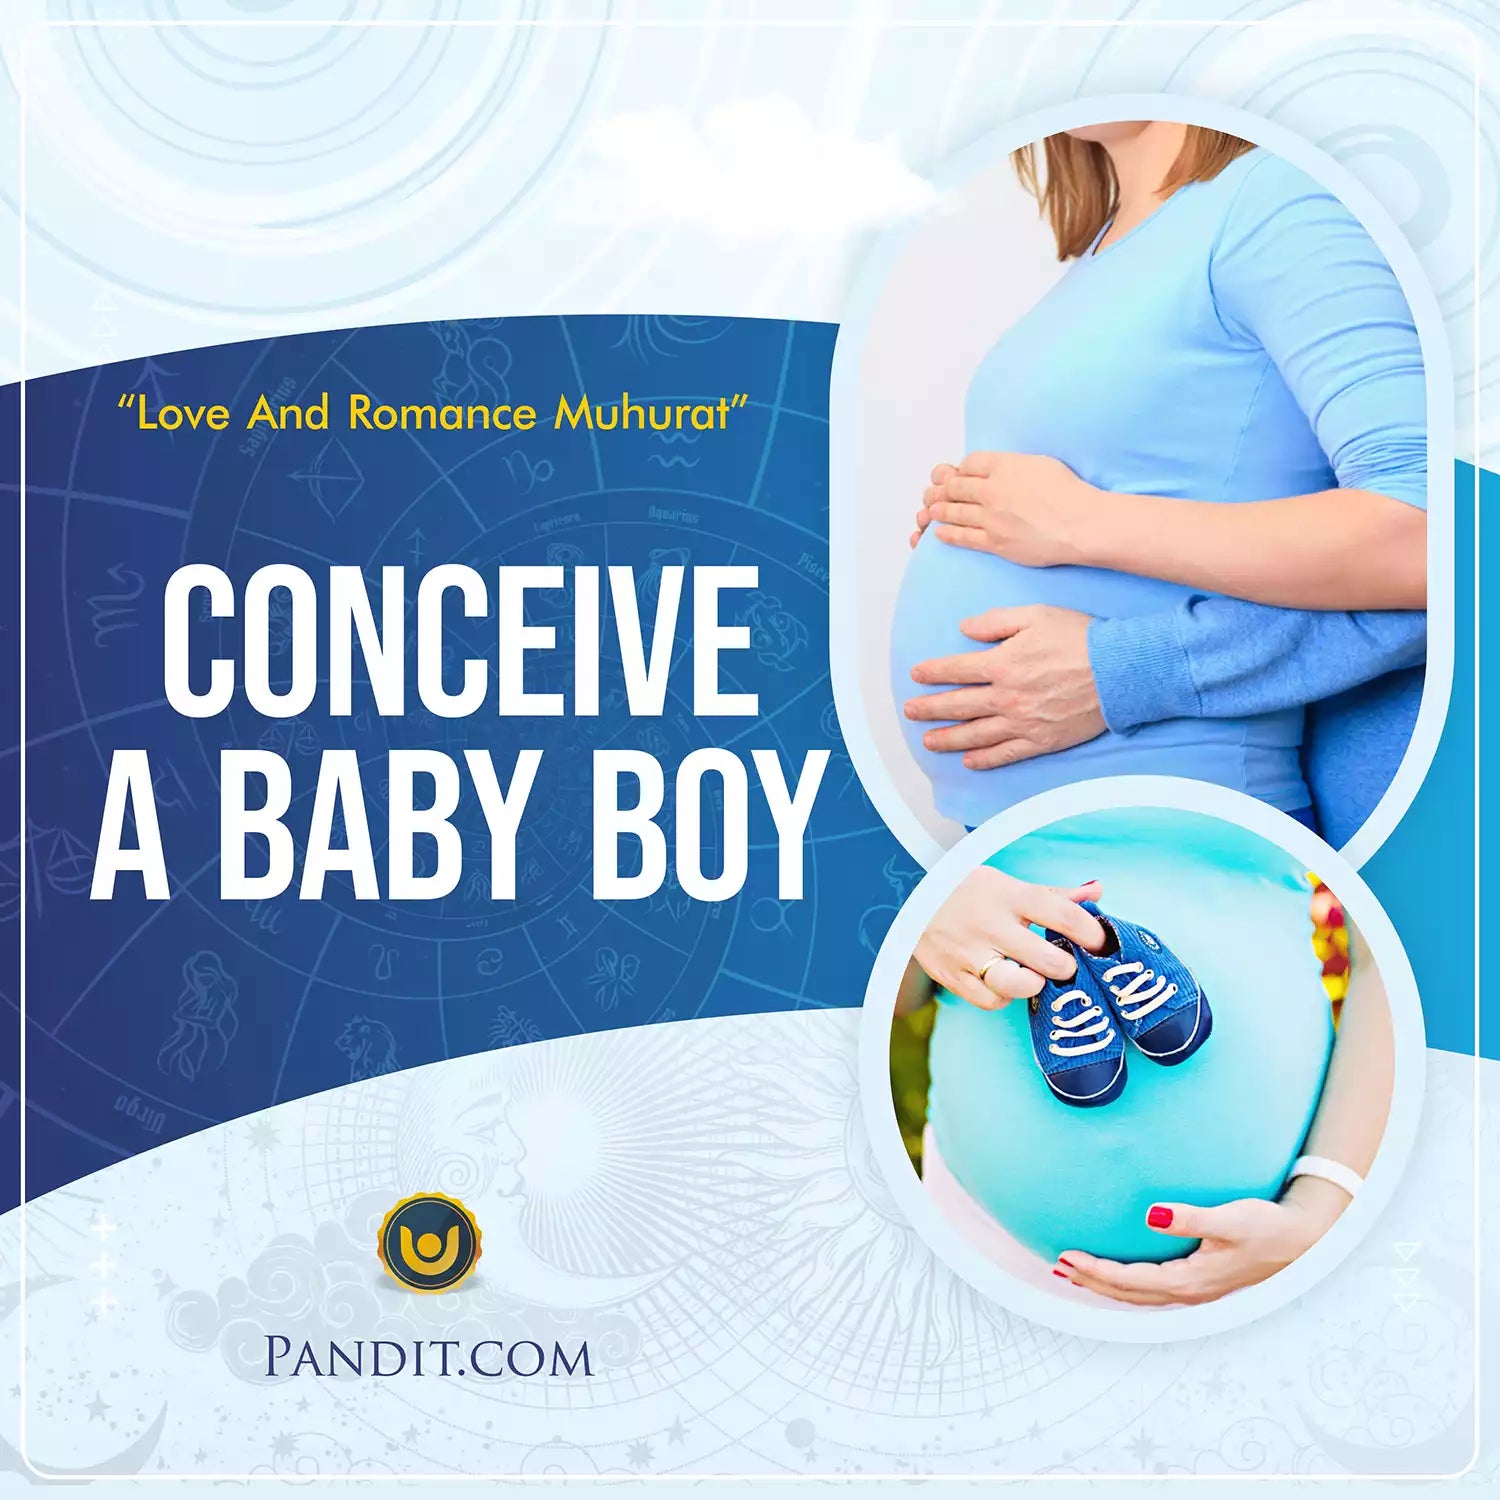 Conceive a Baby Boy